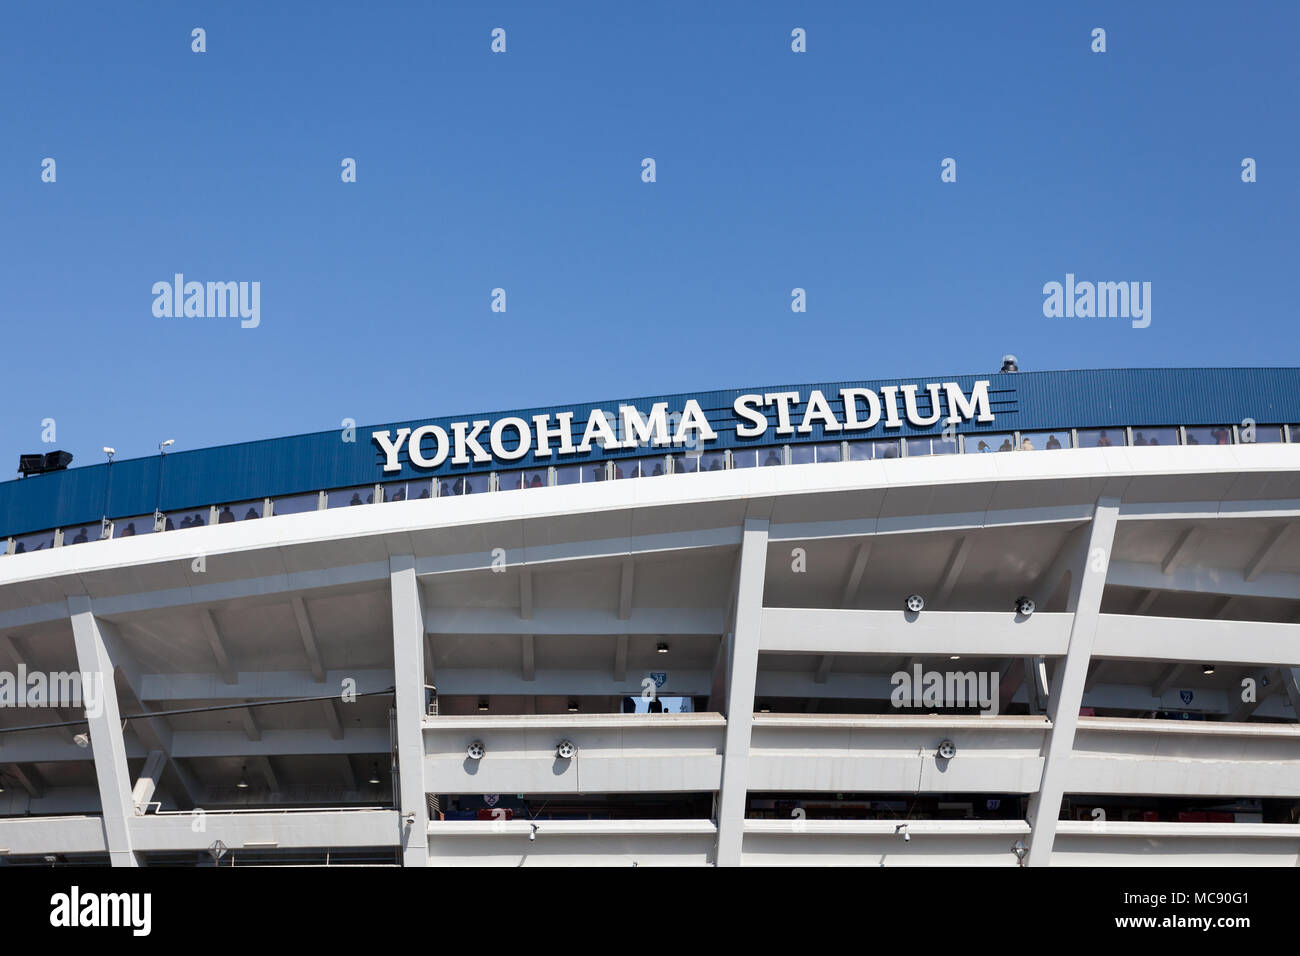 Image détaillée du stade de baseball de Yokohama, Kannai, Kanagawa, Japon Banque D'Images